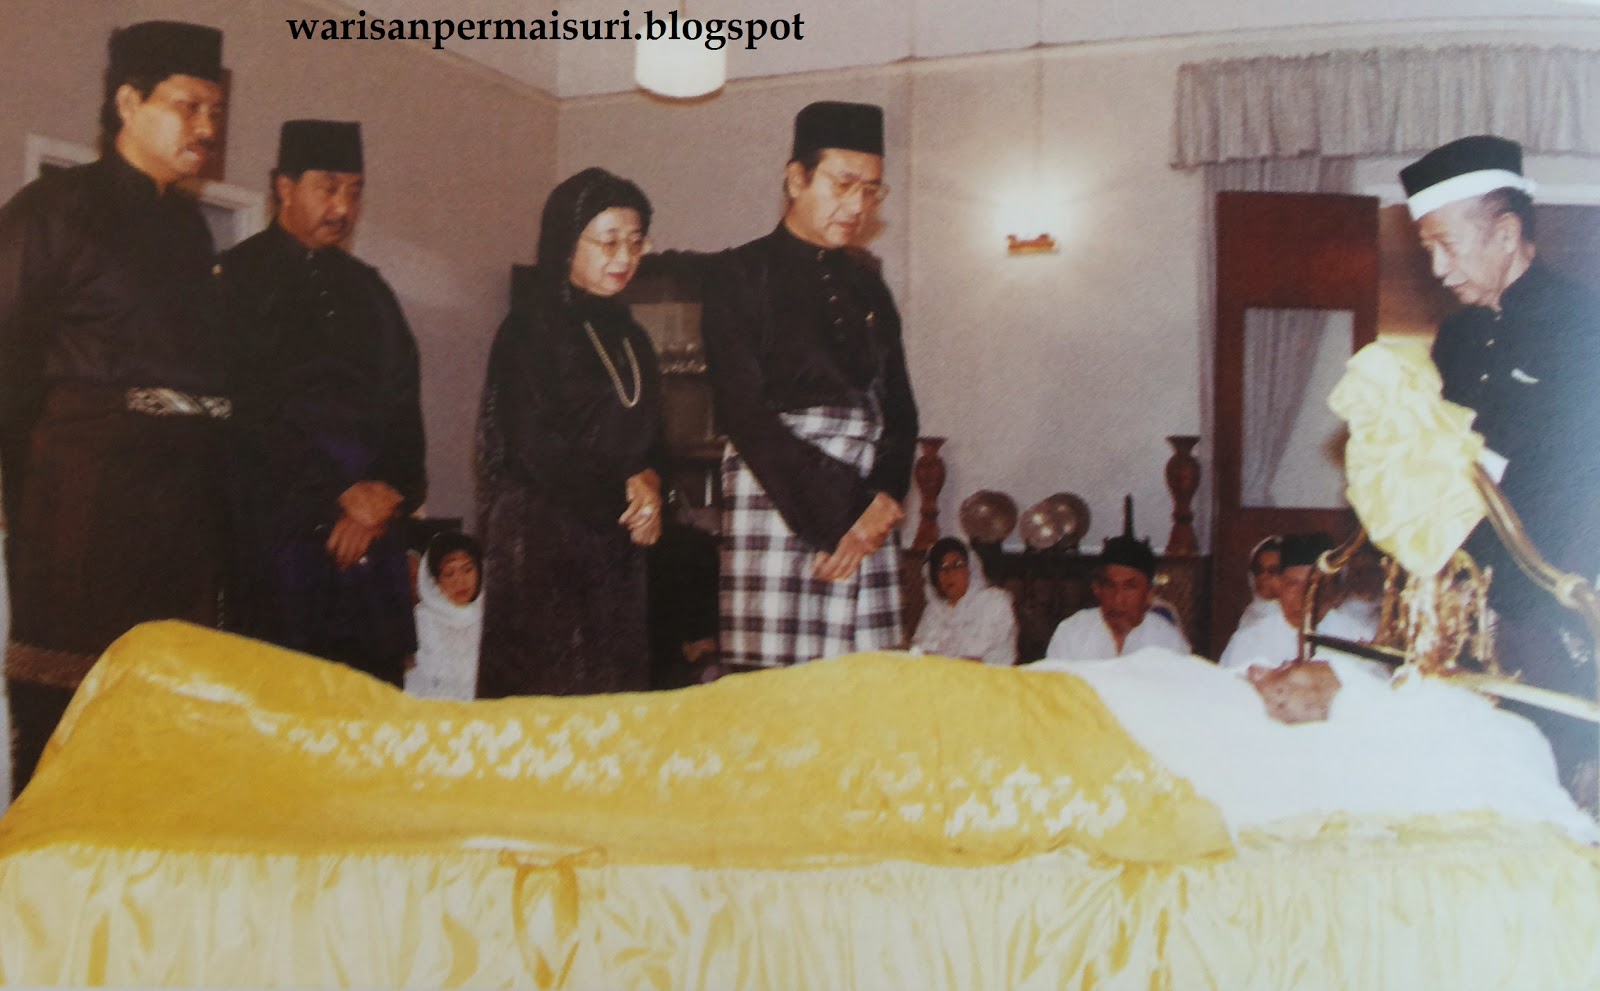 Surat Dr Mahathir Kepada Tunku Abdul Rahman